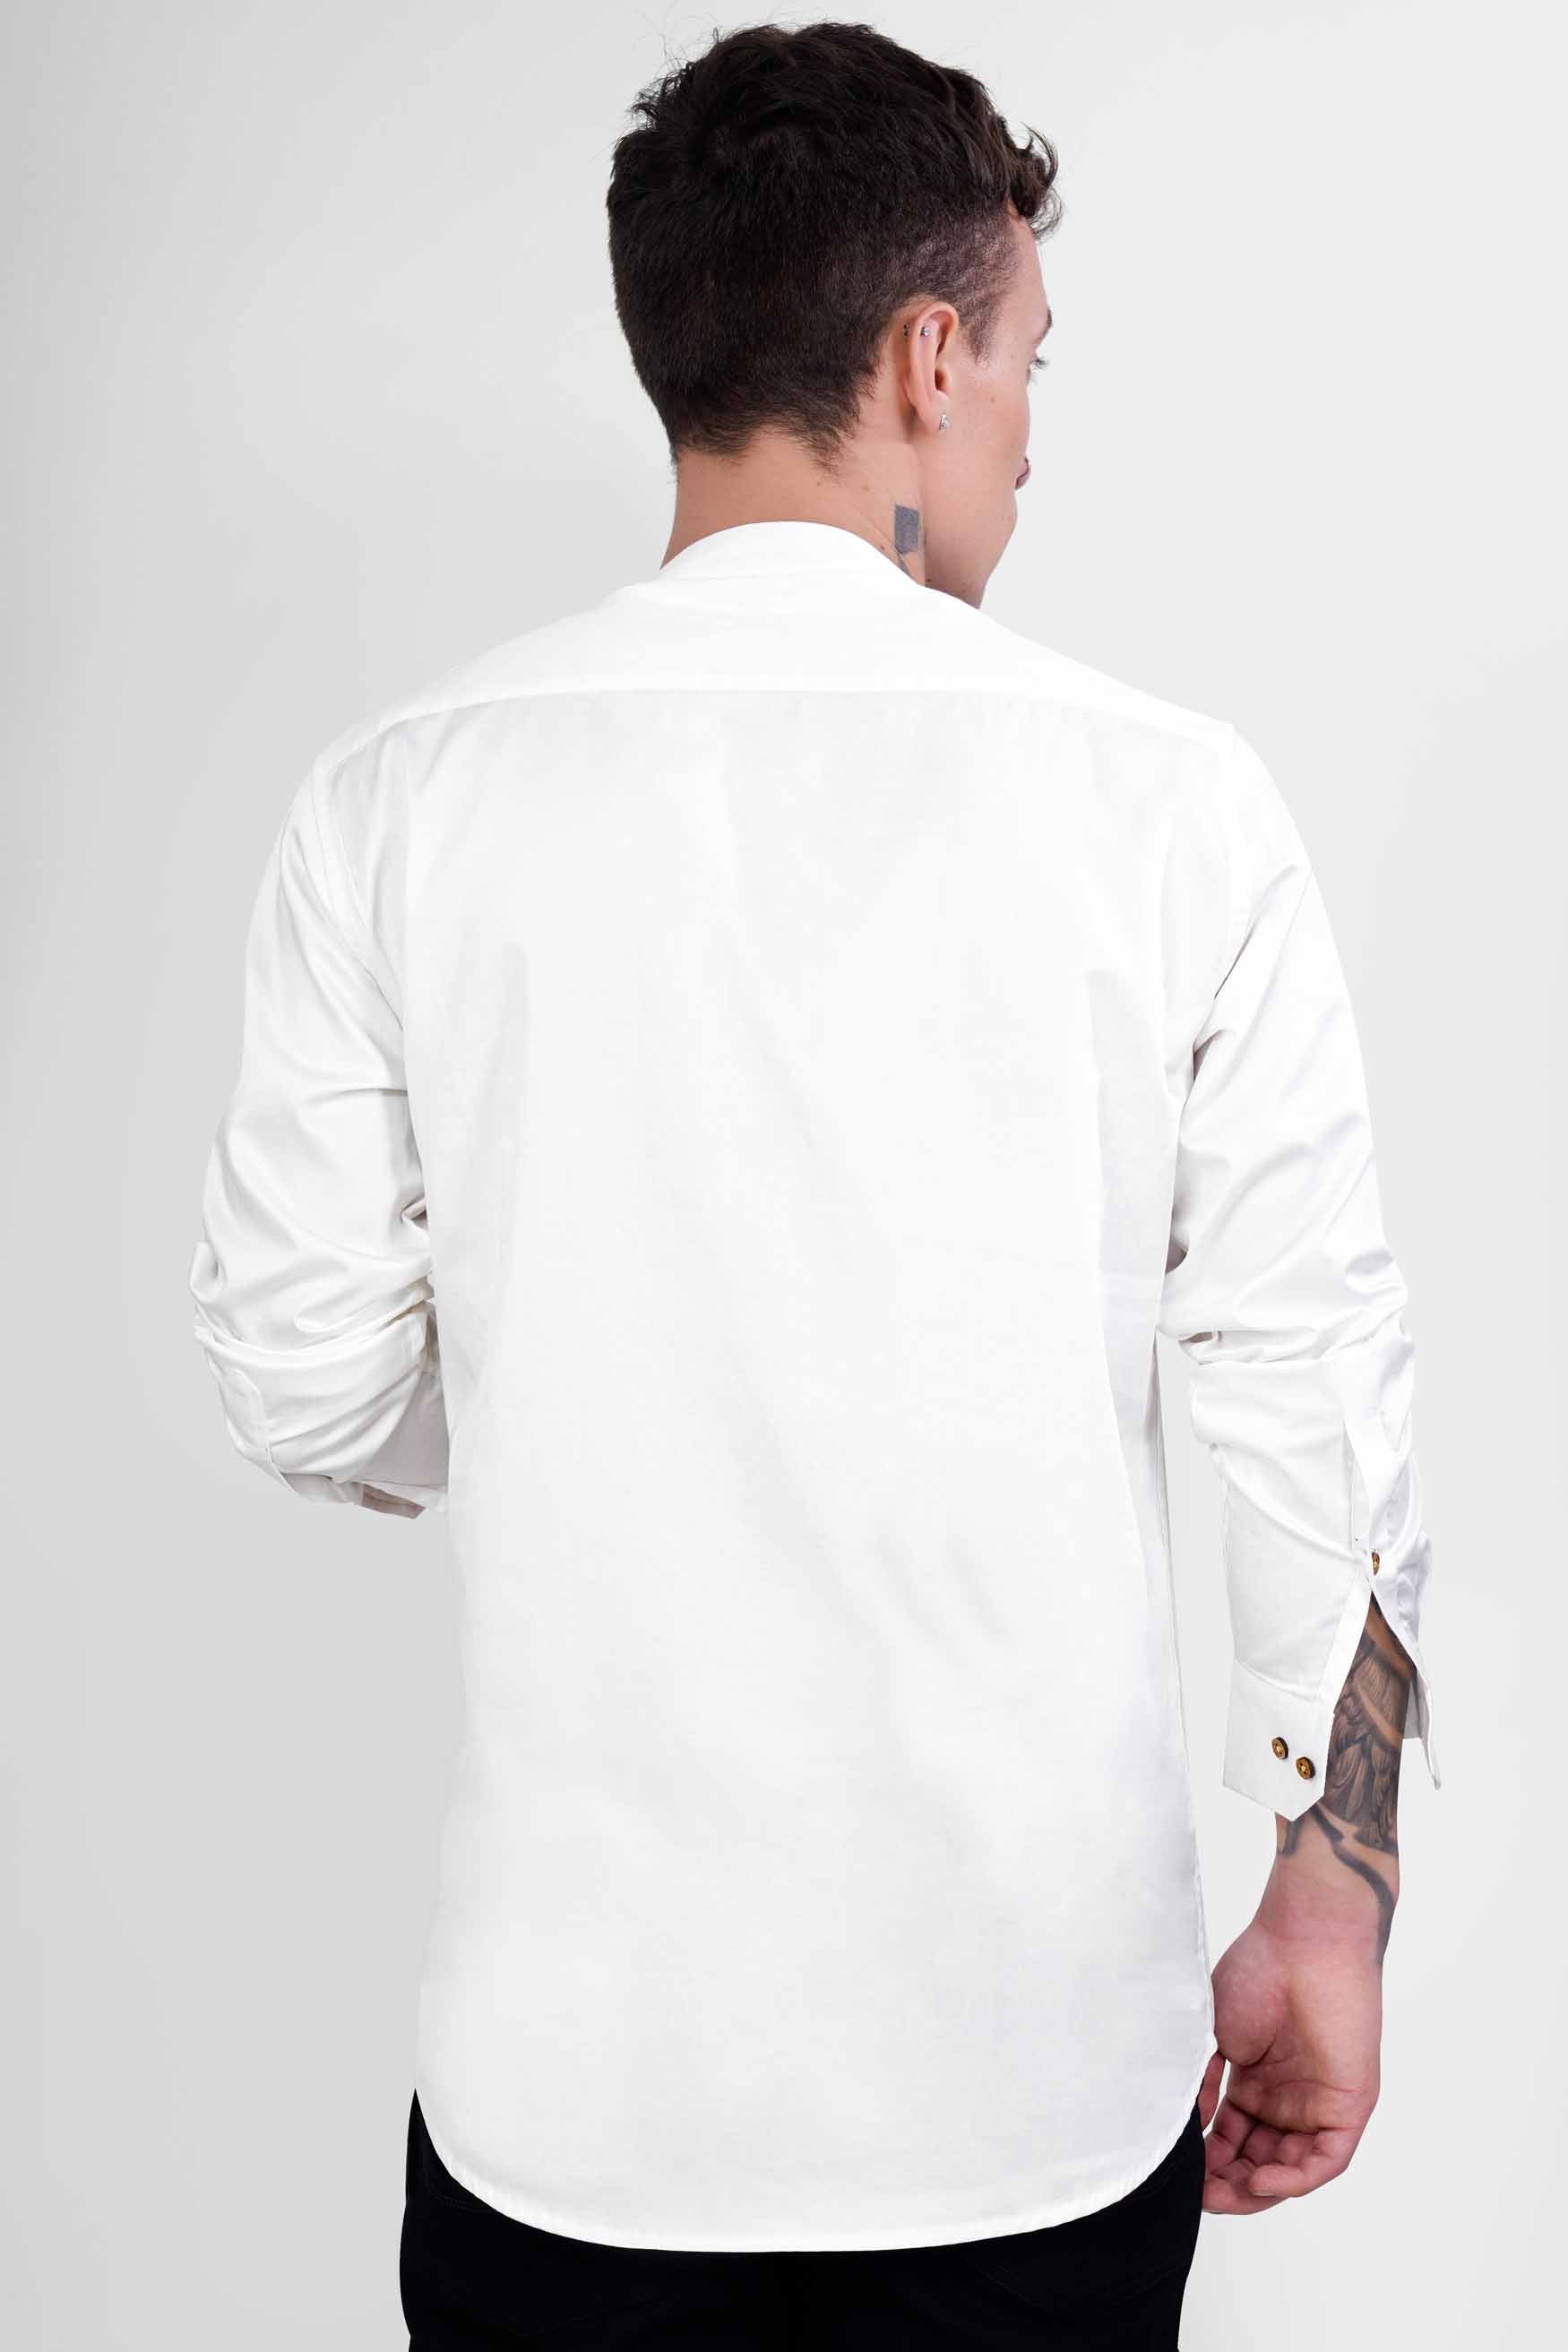 Bright White Trident Embroidered Subtle Sheen Super Soft Premium Cotton Designer Kurta Shirt 2670-KS-E241-38, 2670-KS-E241-H-38, 2670-KS-E241-39, 2670-KS-E241-H-39, 2670-KS-E241-40, 2670-KS-E241-H-40, 2670-KS-E241-42, 2670-KS-E241-H-42, 2670-KS-E241-44, 2670-KS-E241-H-44, 2670-KS-E241-46, 2670-KS-E241-H-46, 2670-KS-E241-48, 2670-KS-E241-H-48, 2670-KS-E241-50, 2670-KS-E241-H-50, 2670-KS-E241-52, 2670-KS-E241-H-52